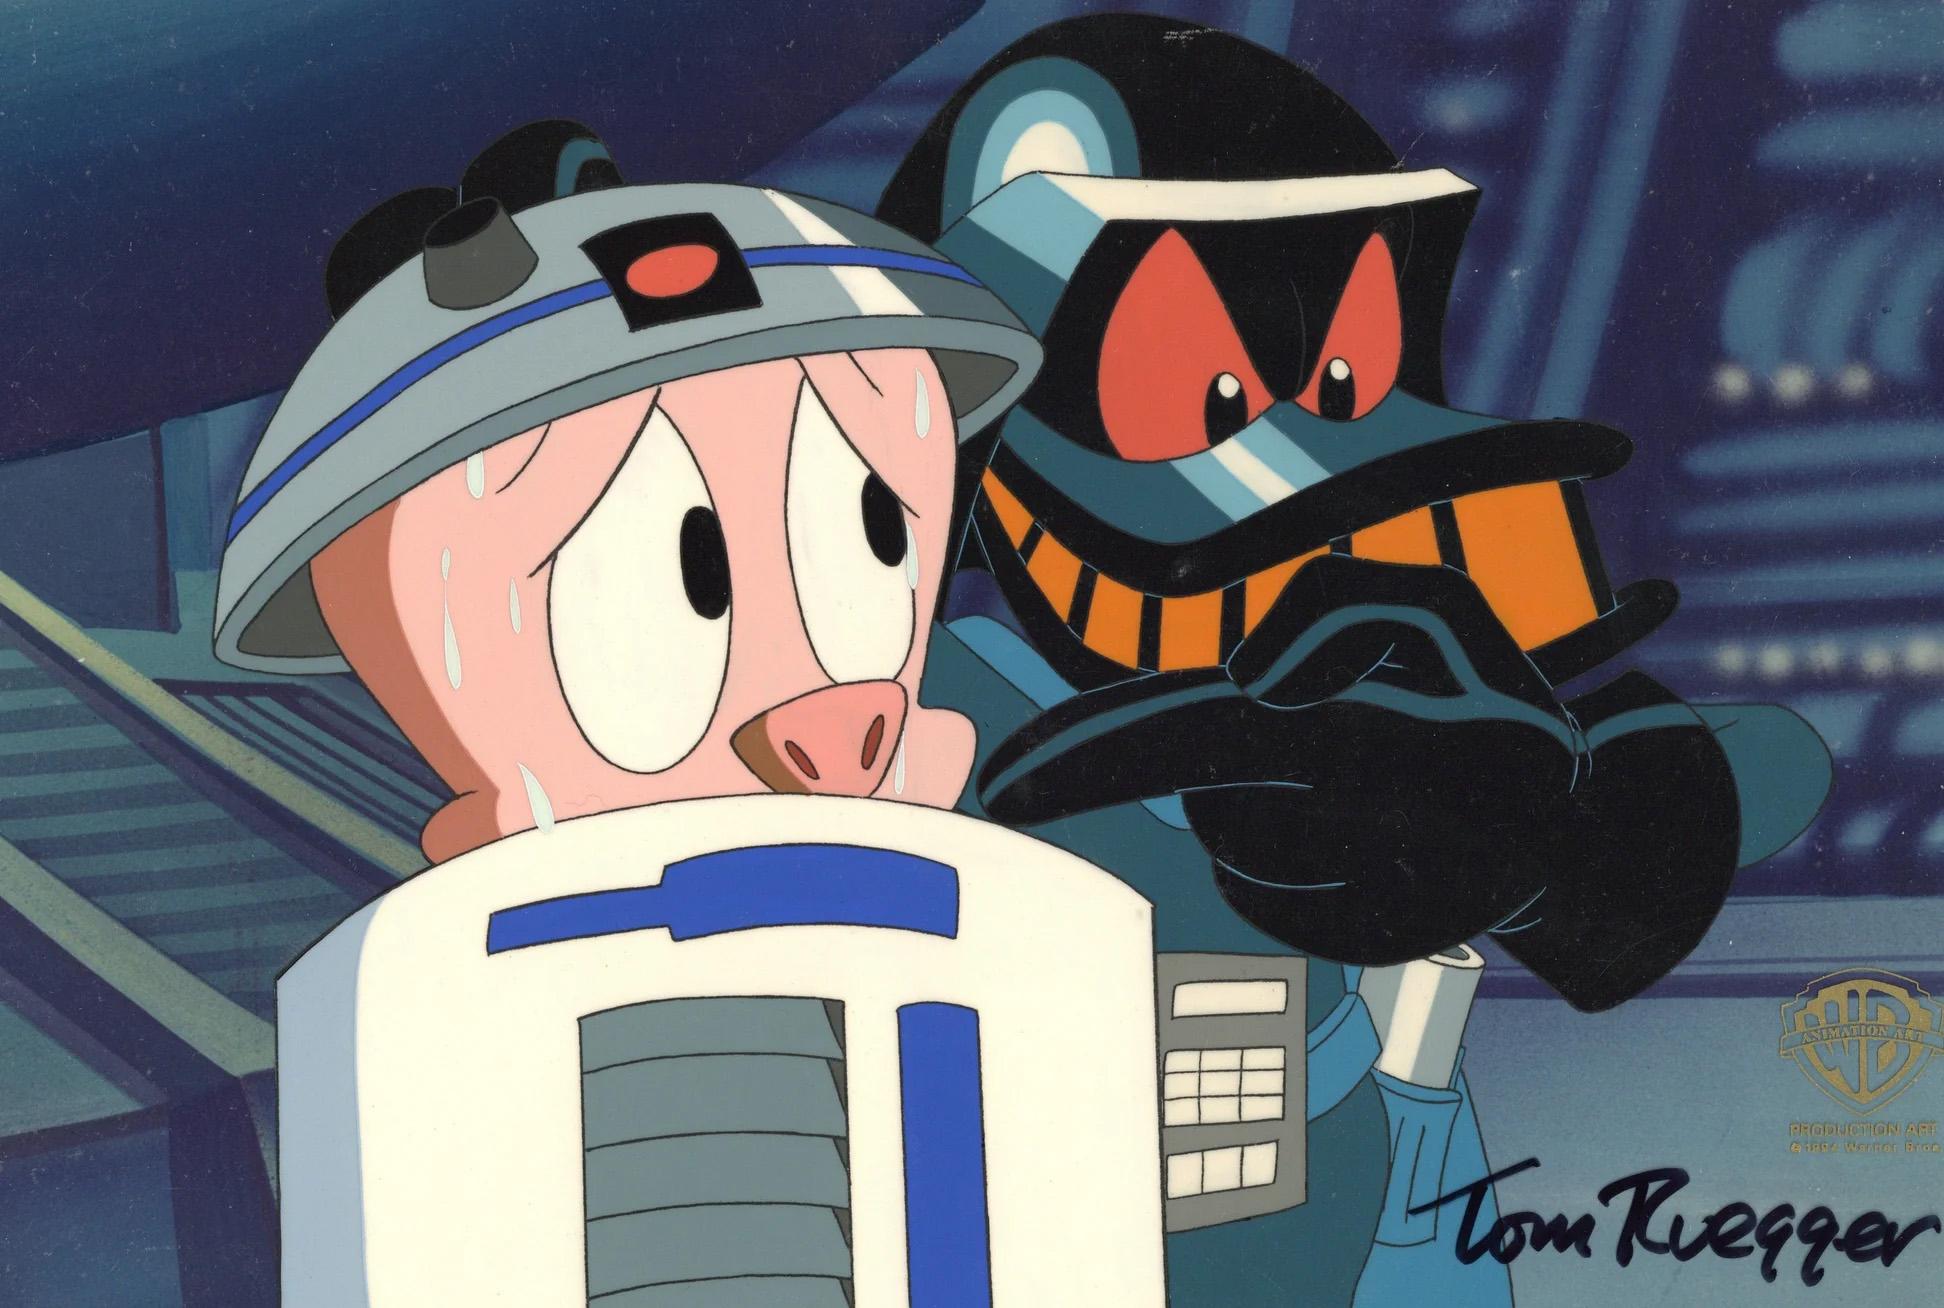 Tiny Toons Adventures Original Cel Signed Tom Ruegger: Duck Vader, Hampton  - Art by Warner Bros. Studio Artists